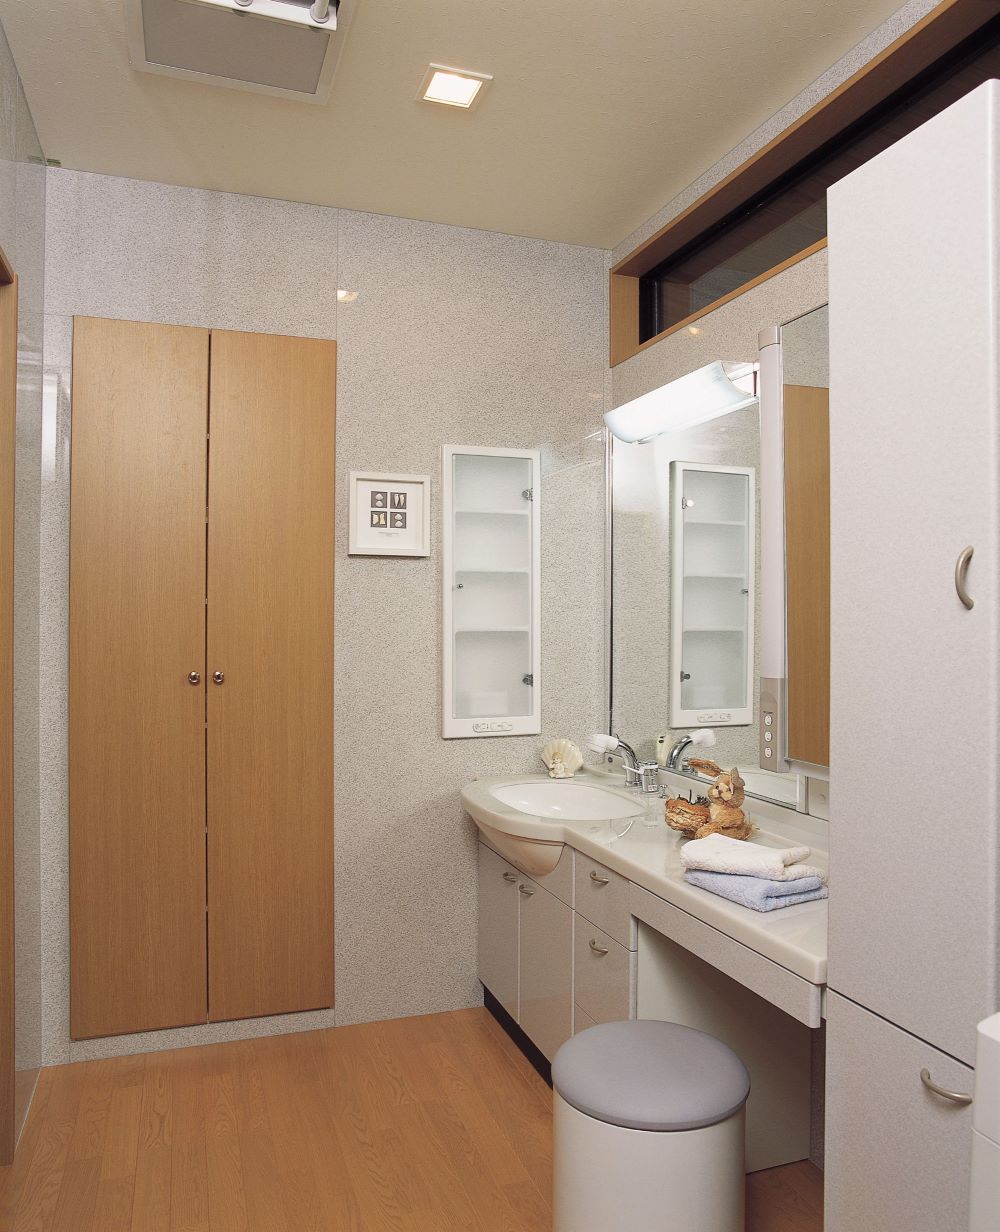 日本鏡面裝飾板-浴室裝飾板案例分享-室內浴室牆面裝飾建材推薦